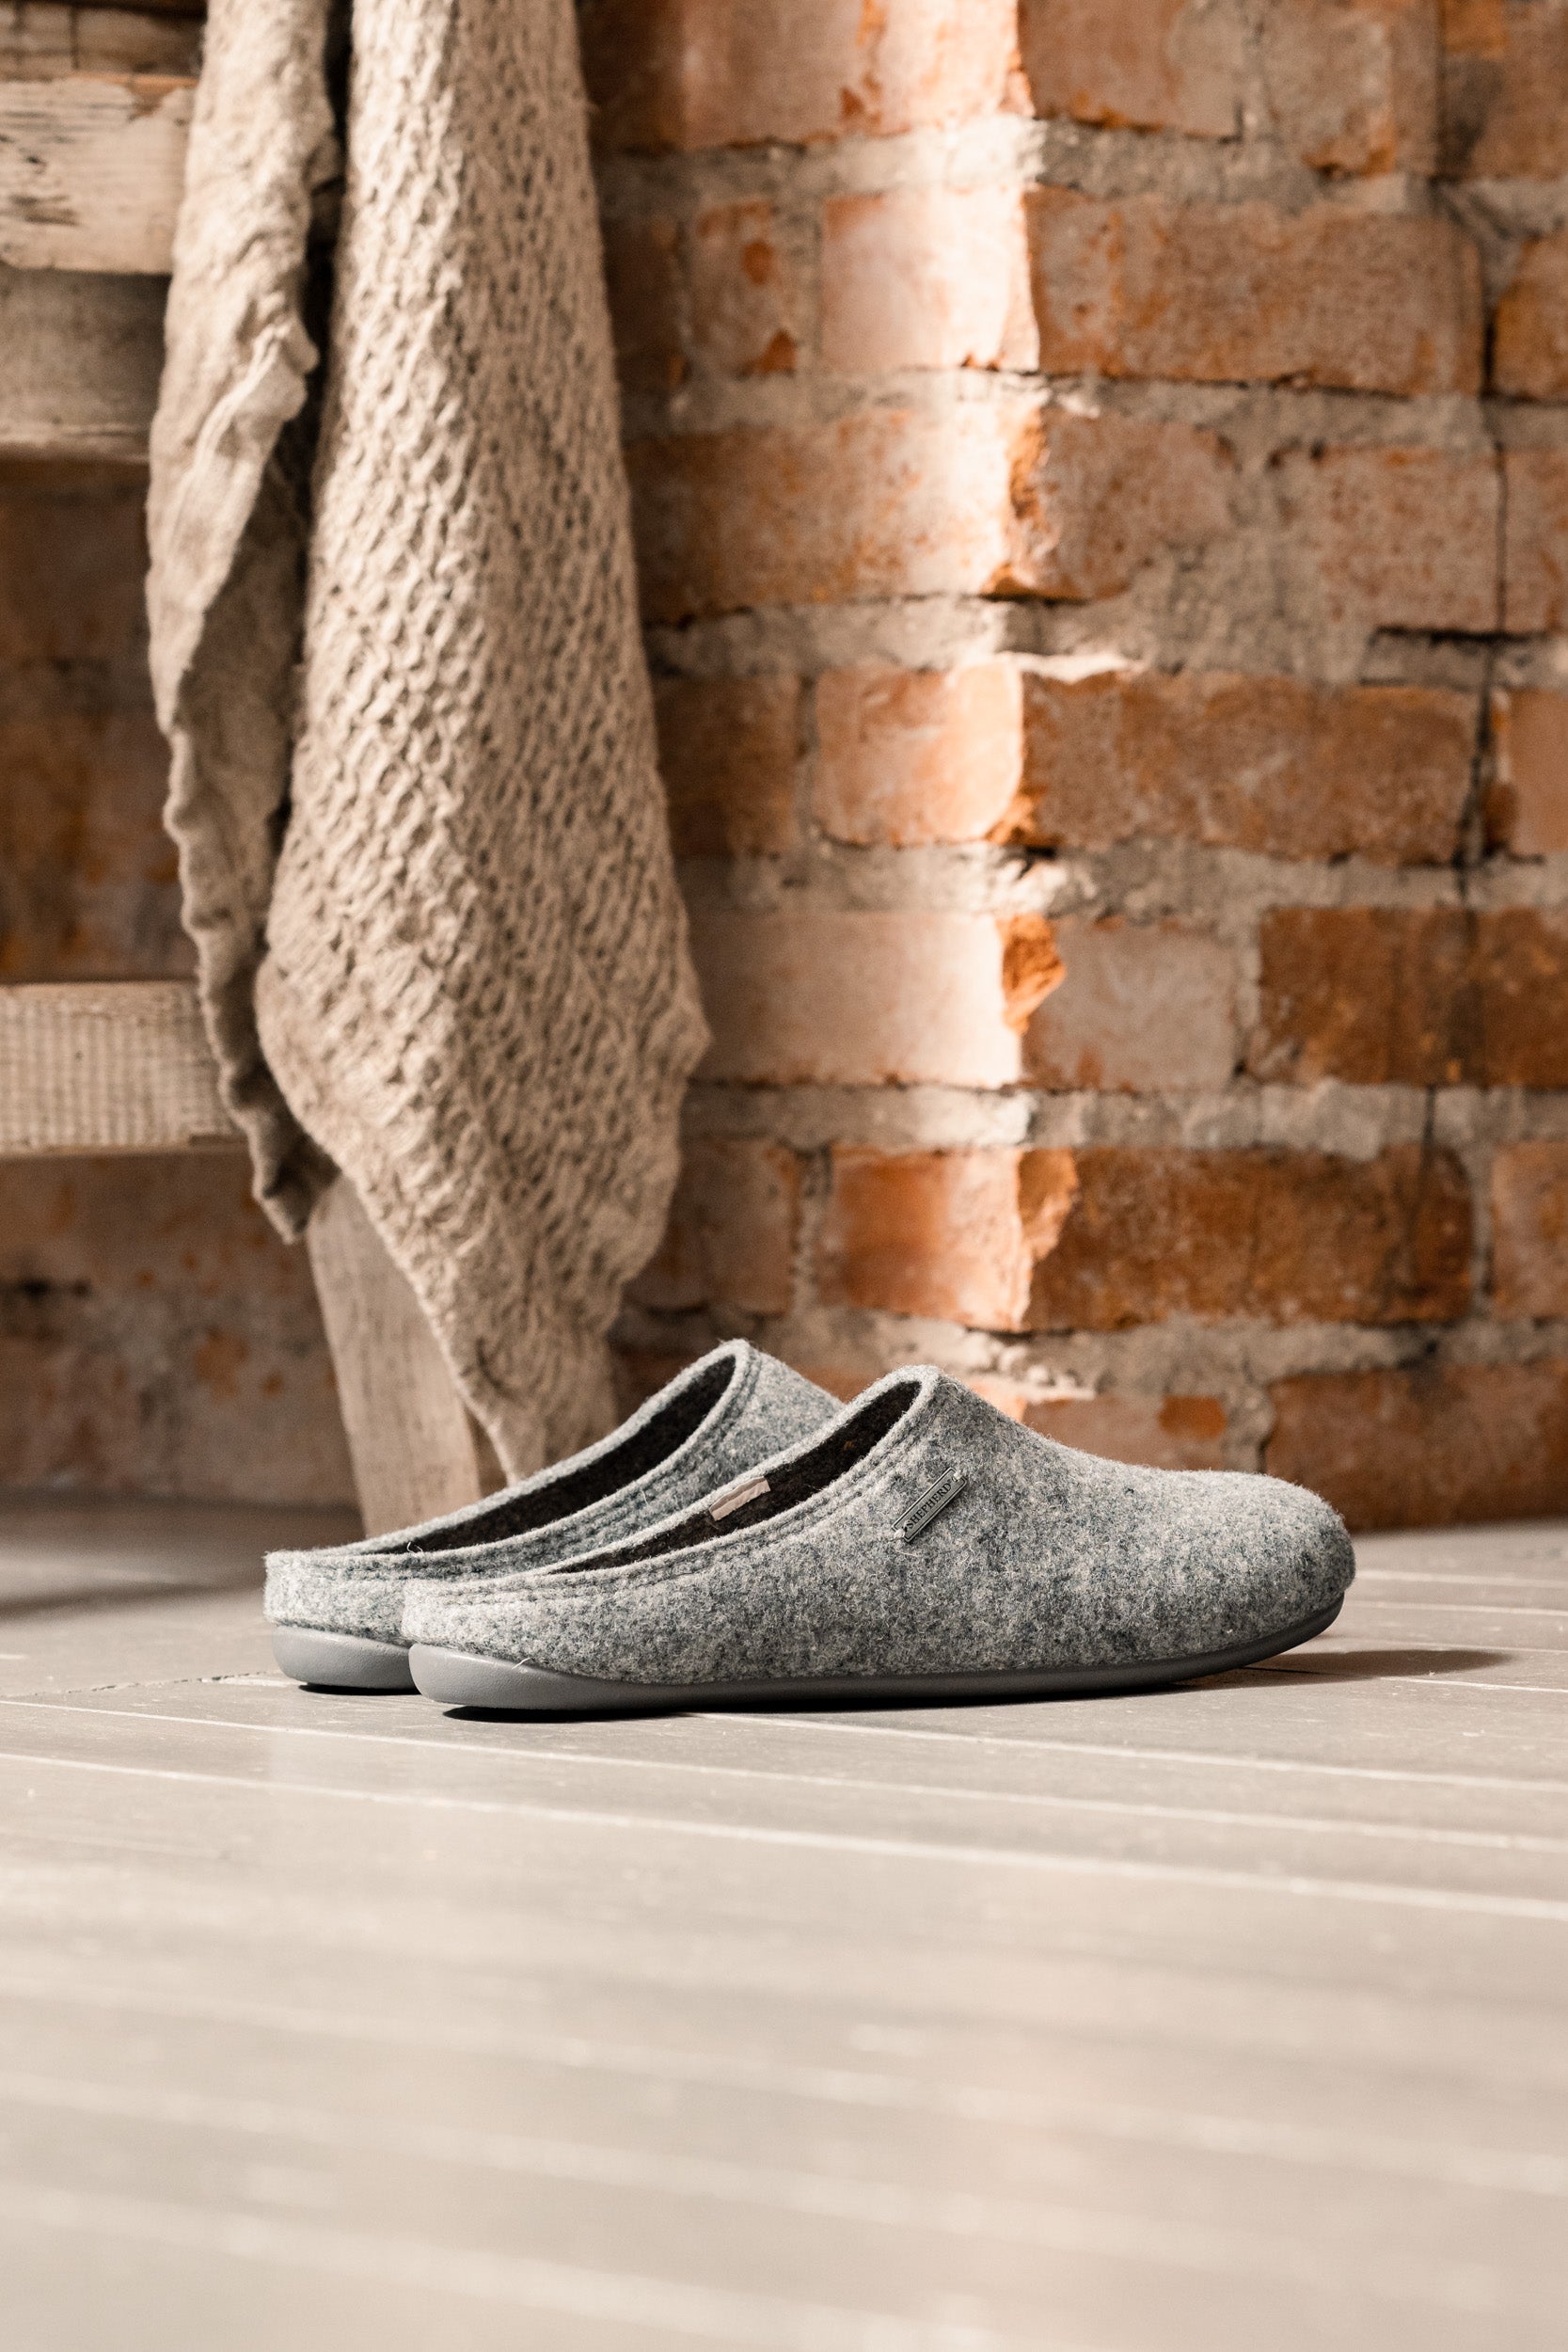 Wool Slippers - Jon in Grey